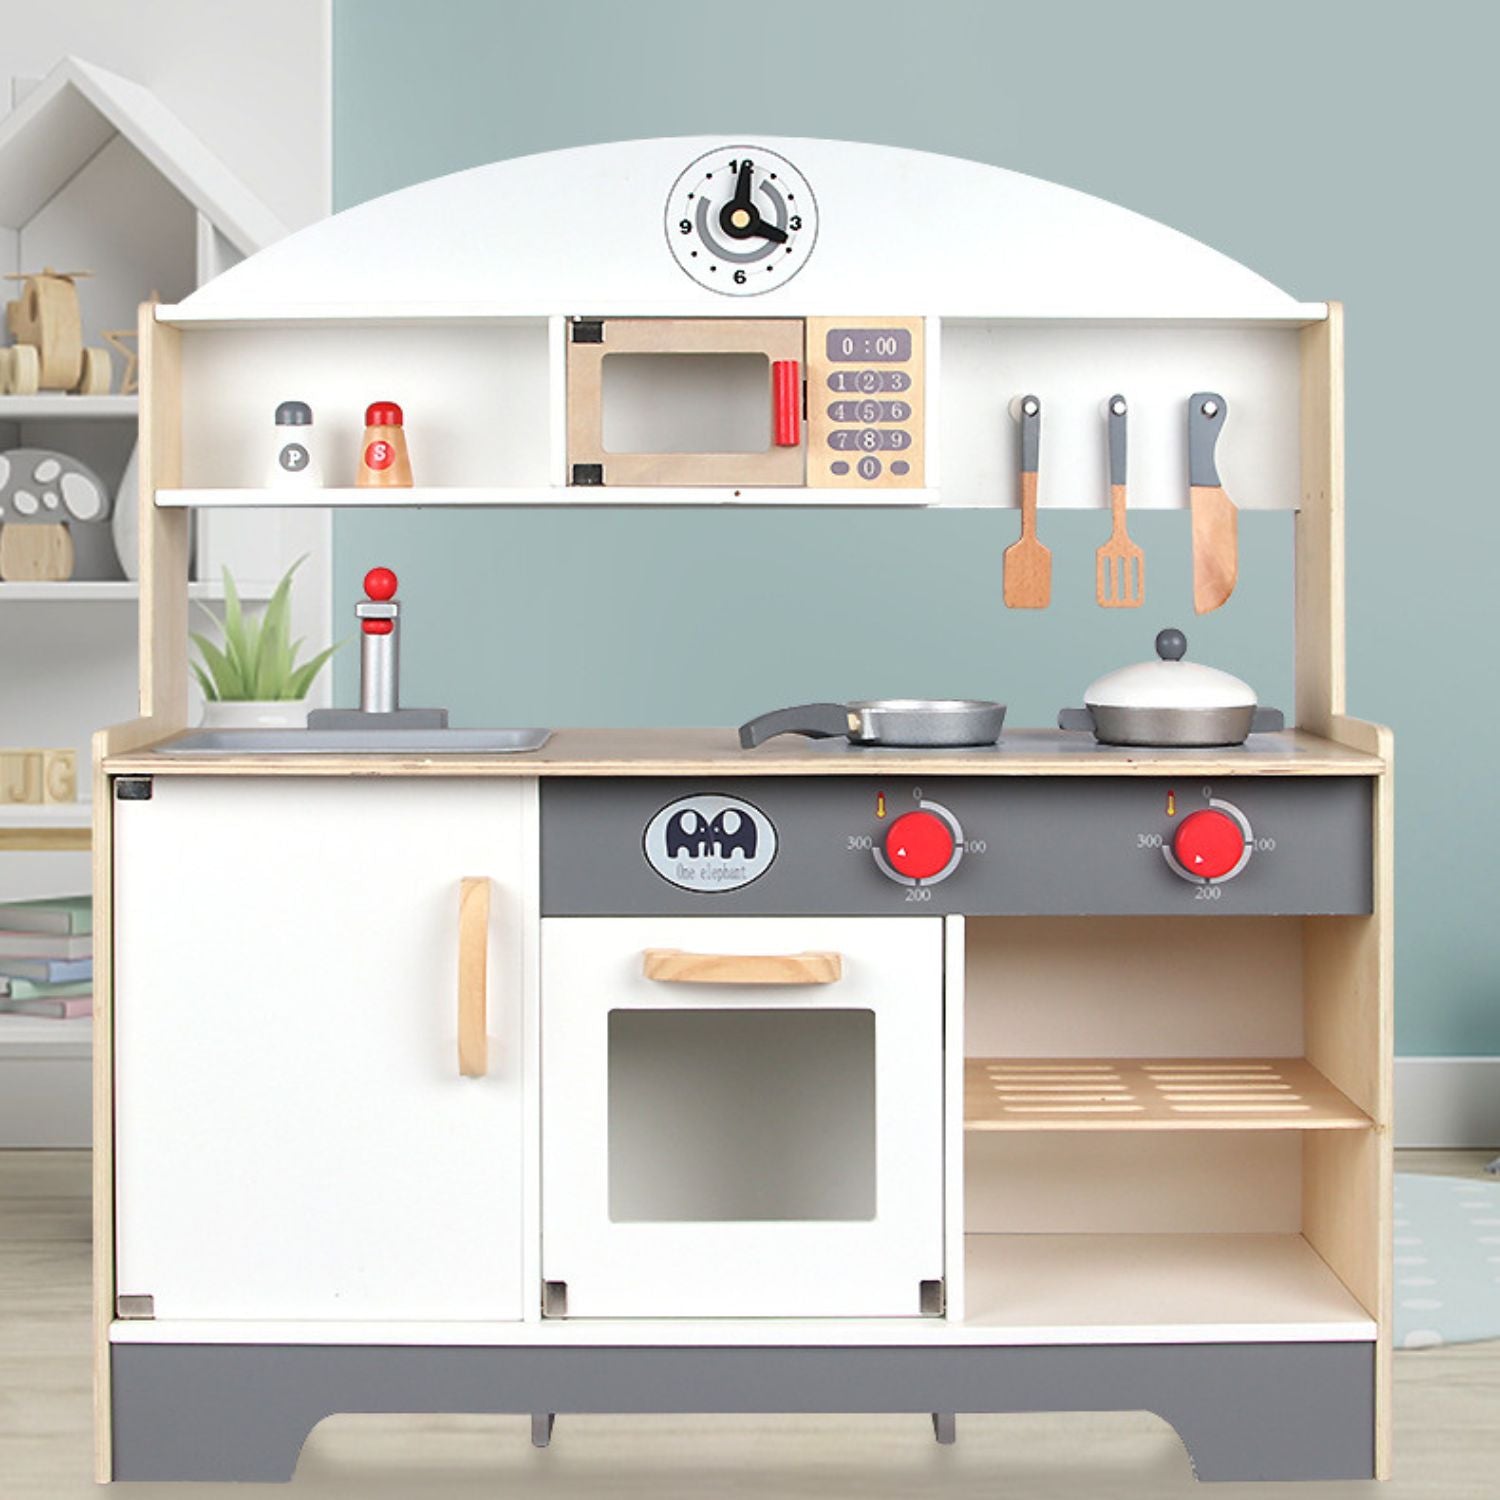 EKKIO Wooden Kitchen Playset for Kids (Minimalist)